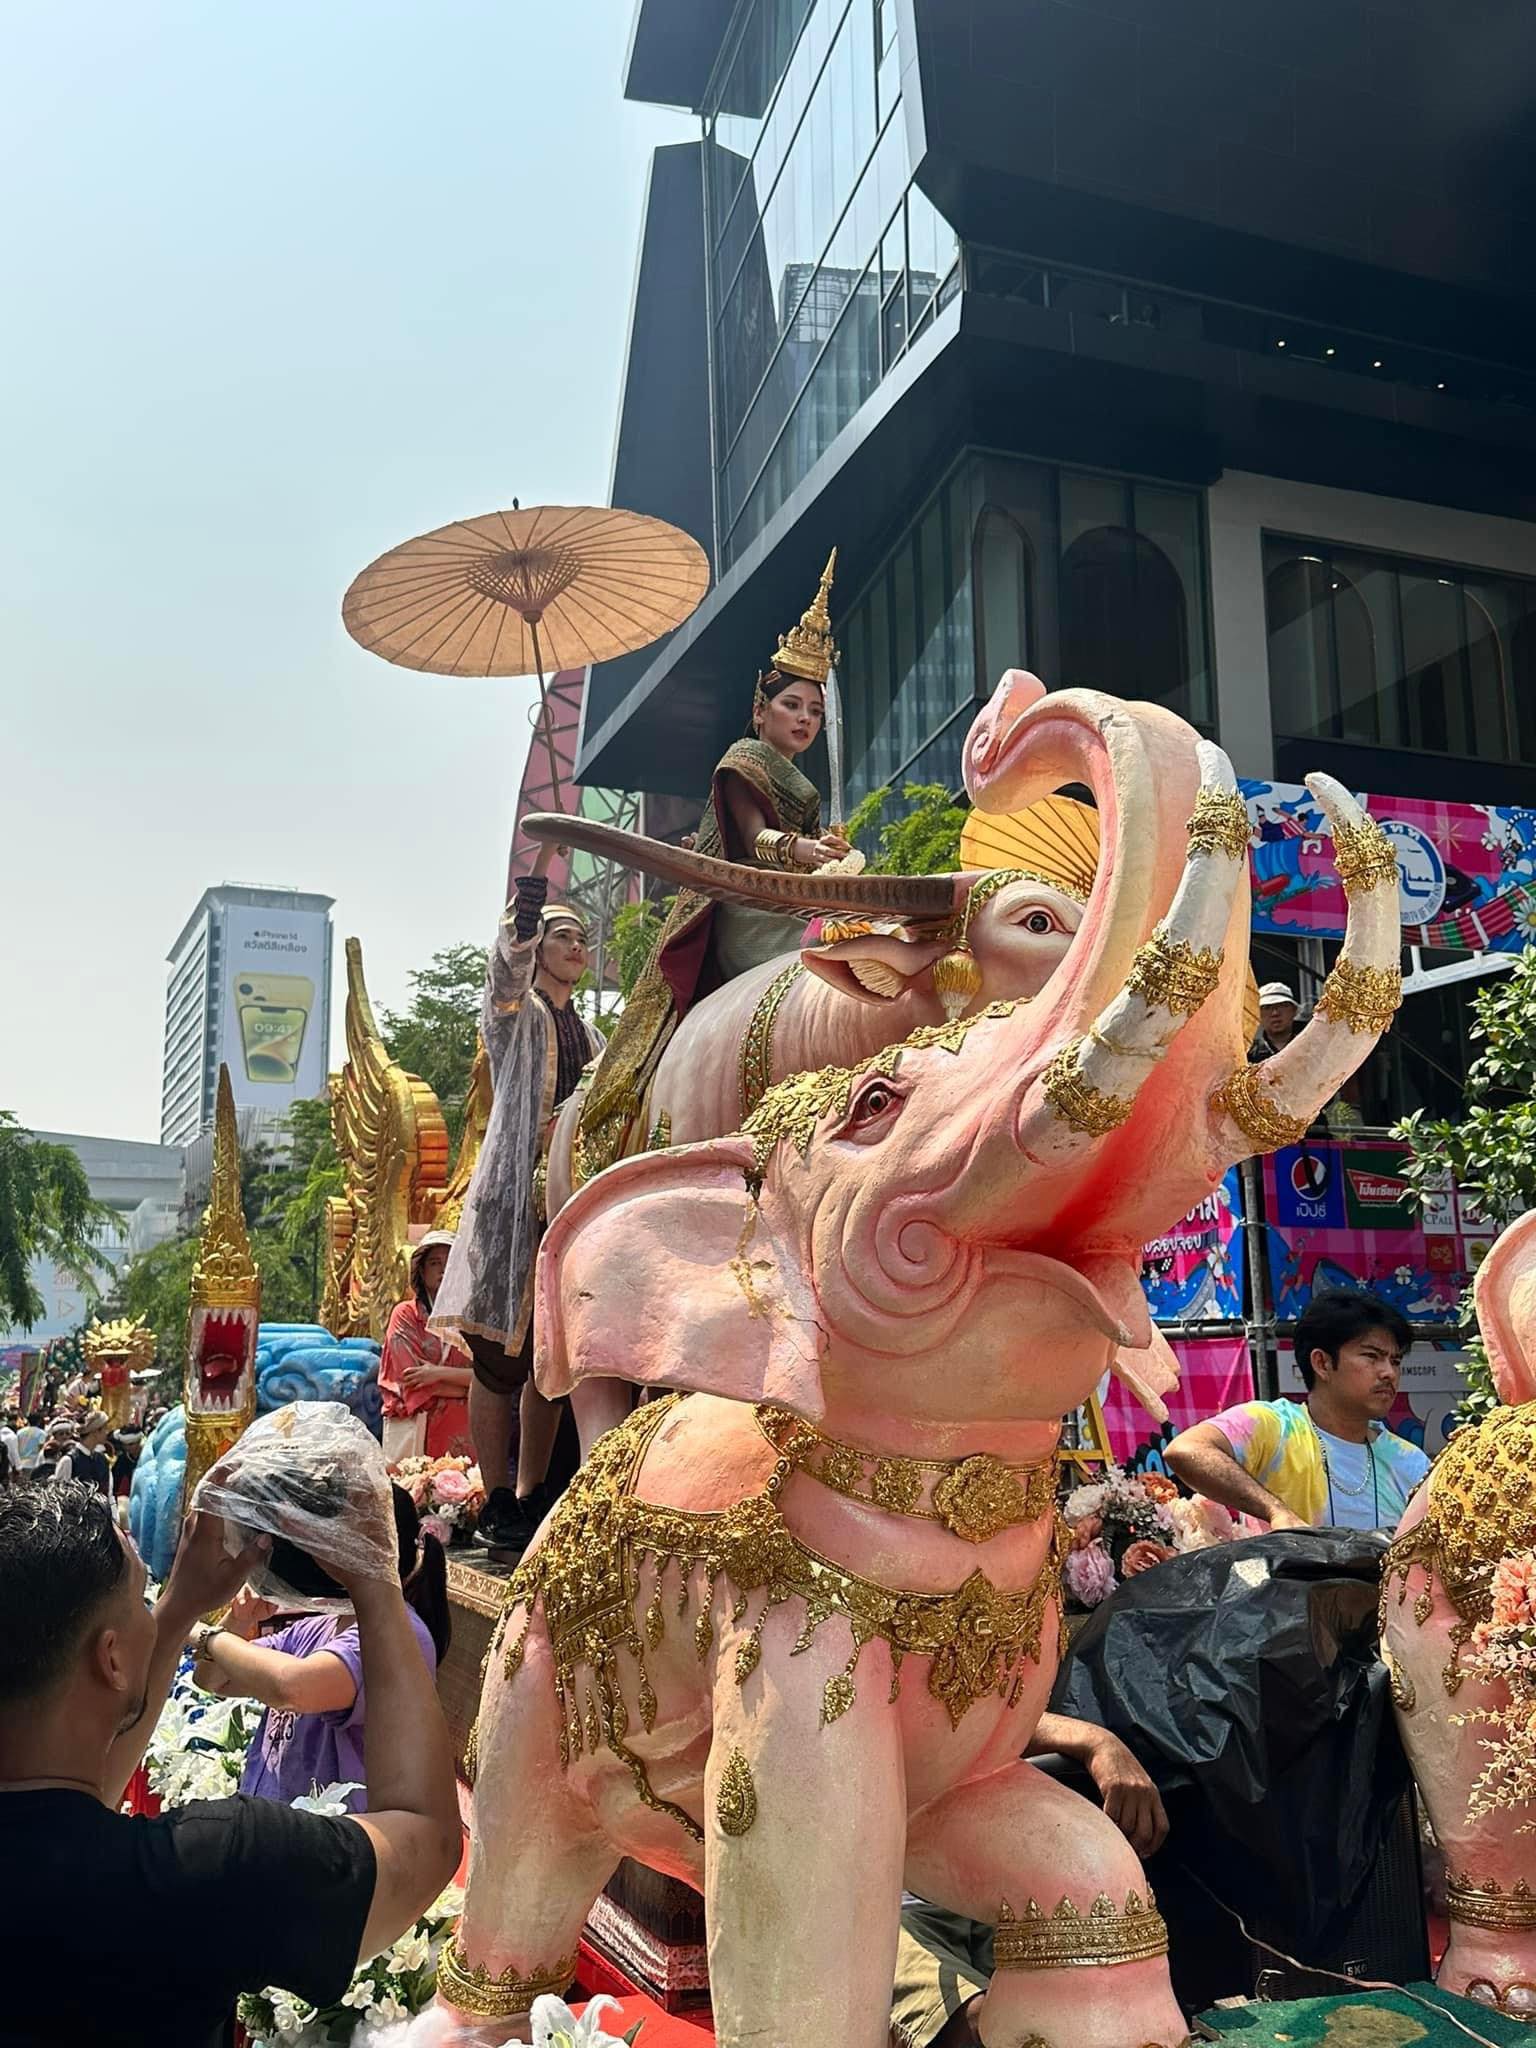 Baifein thu hút sự chú ý của báo chí và người hâm mộ xứ chùa vàng khi hóa thân thành nữ thần Songkran 2023 trong trang phục truyền thống vô cùng ấn tượng.